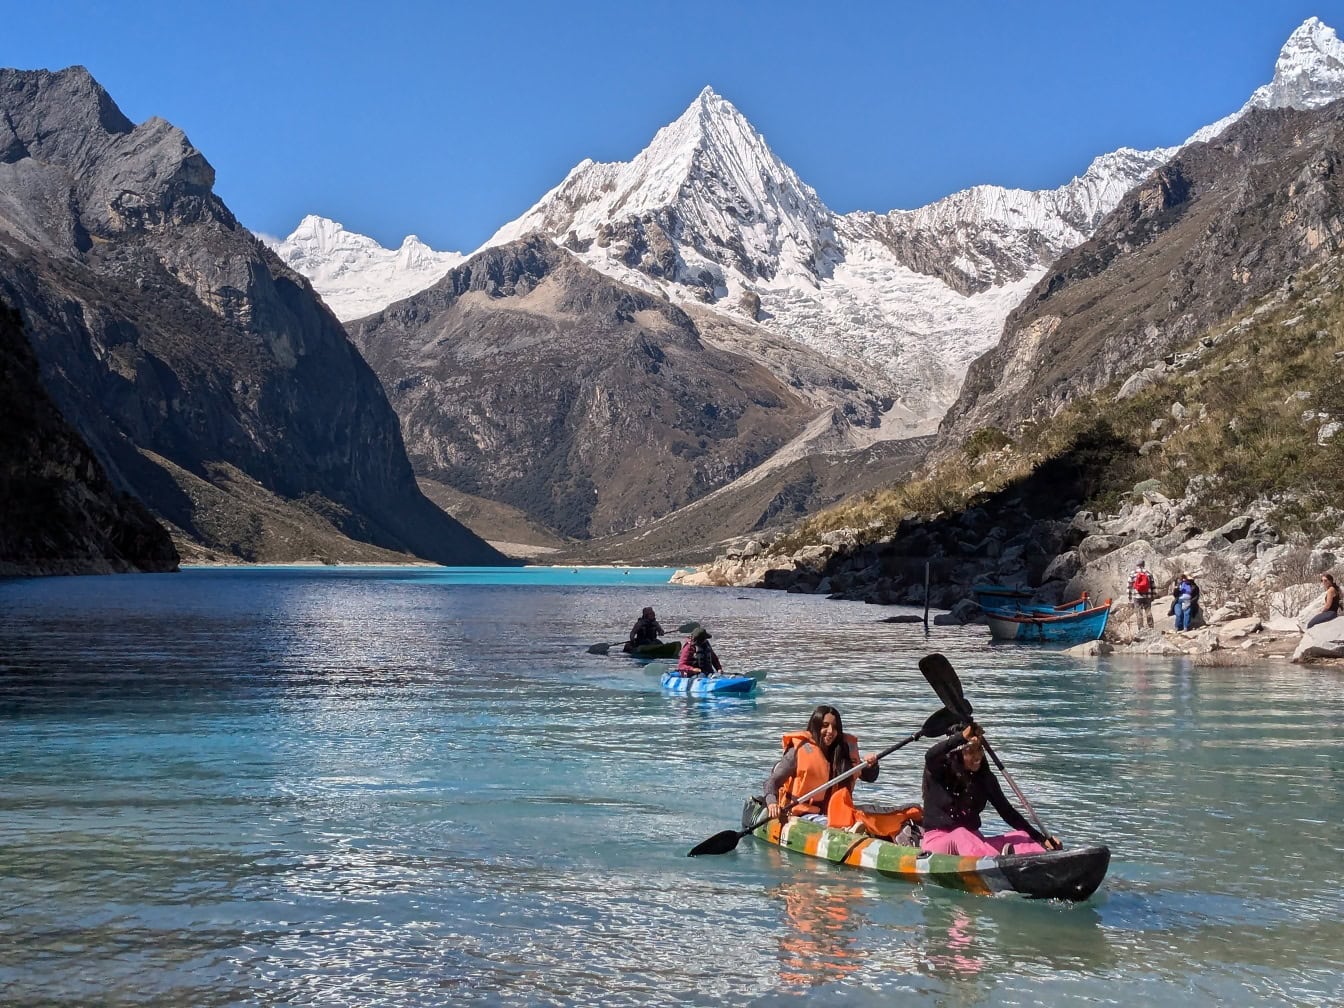 Lidé na kajaku na jezeře Paron v Cordillera Blanca v peruánských Andách s vrcholky hor v pozadí